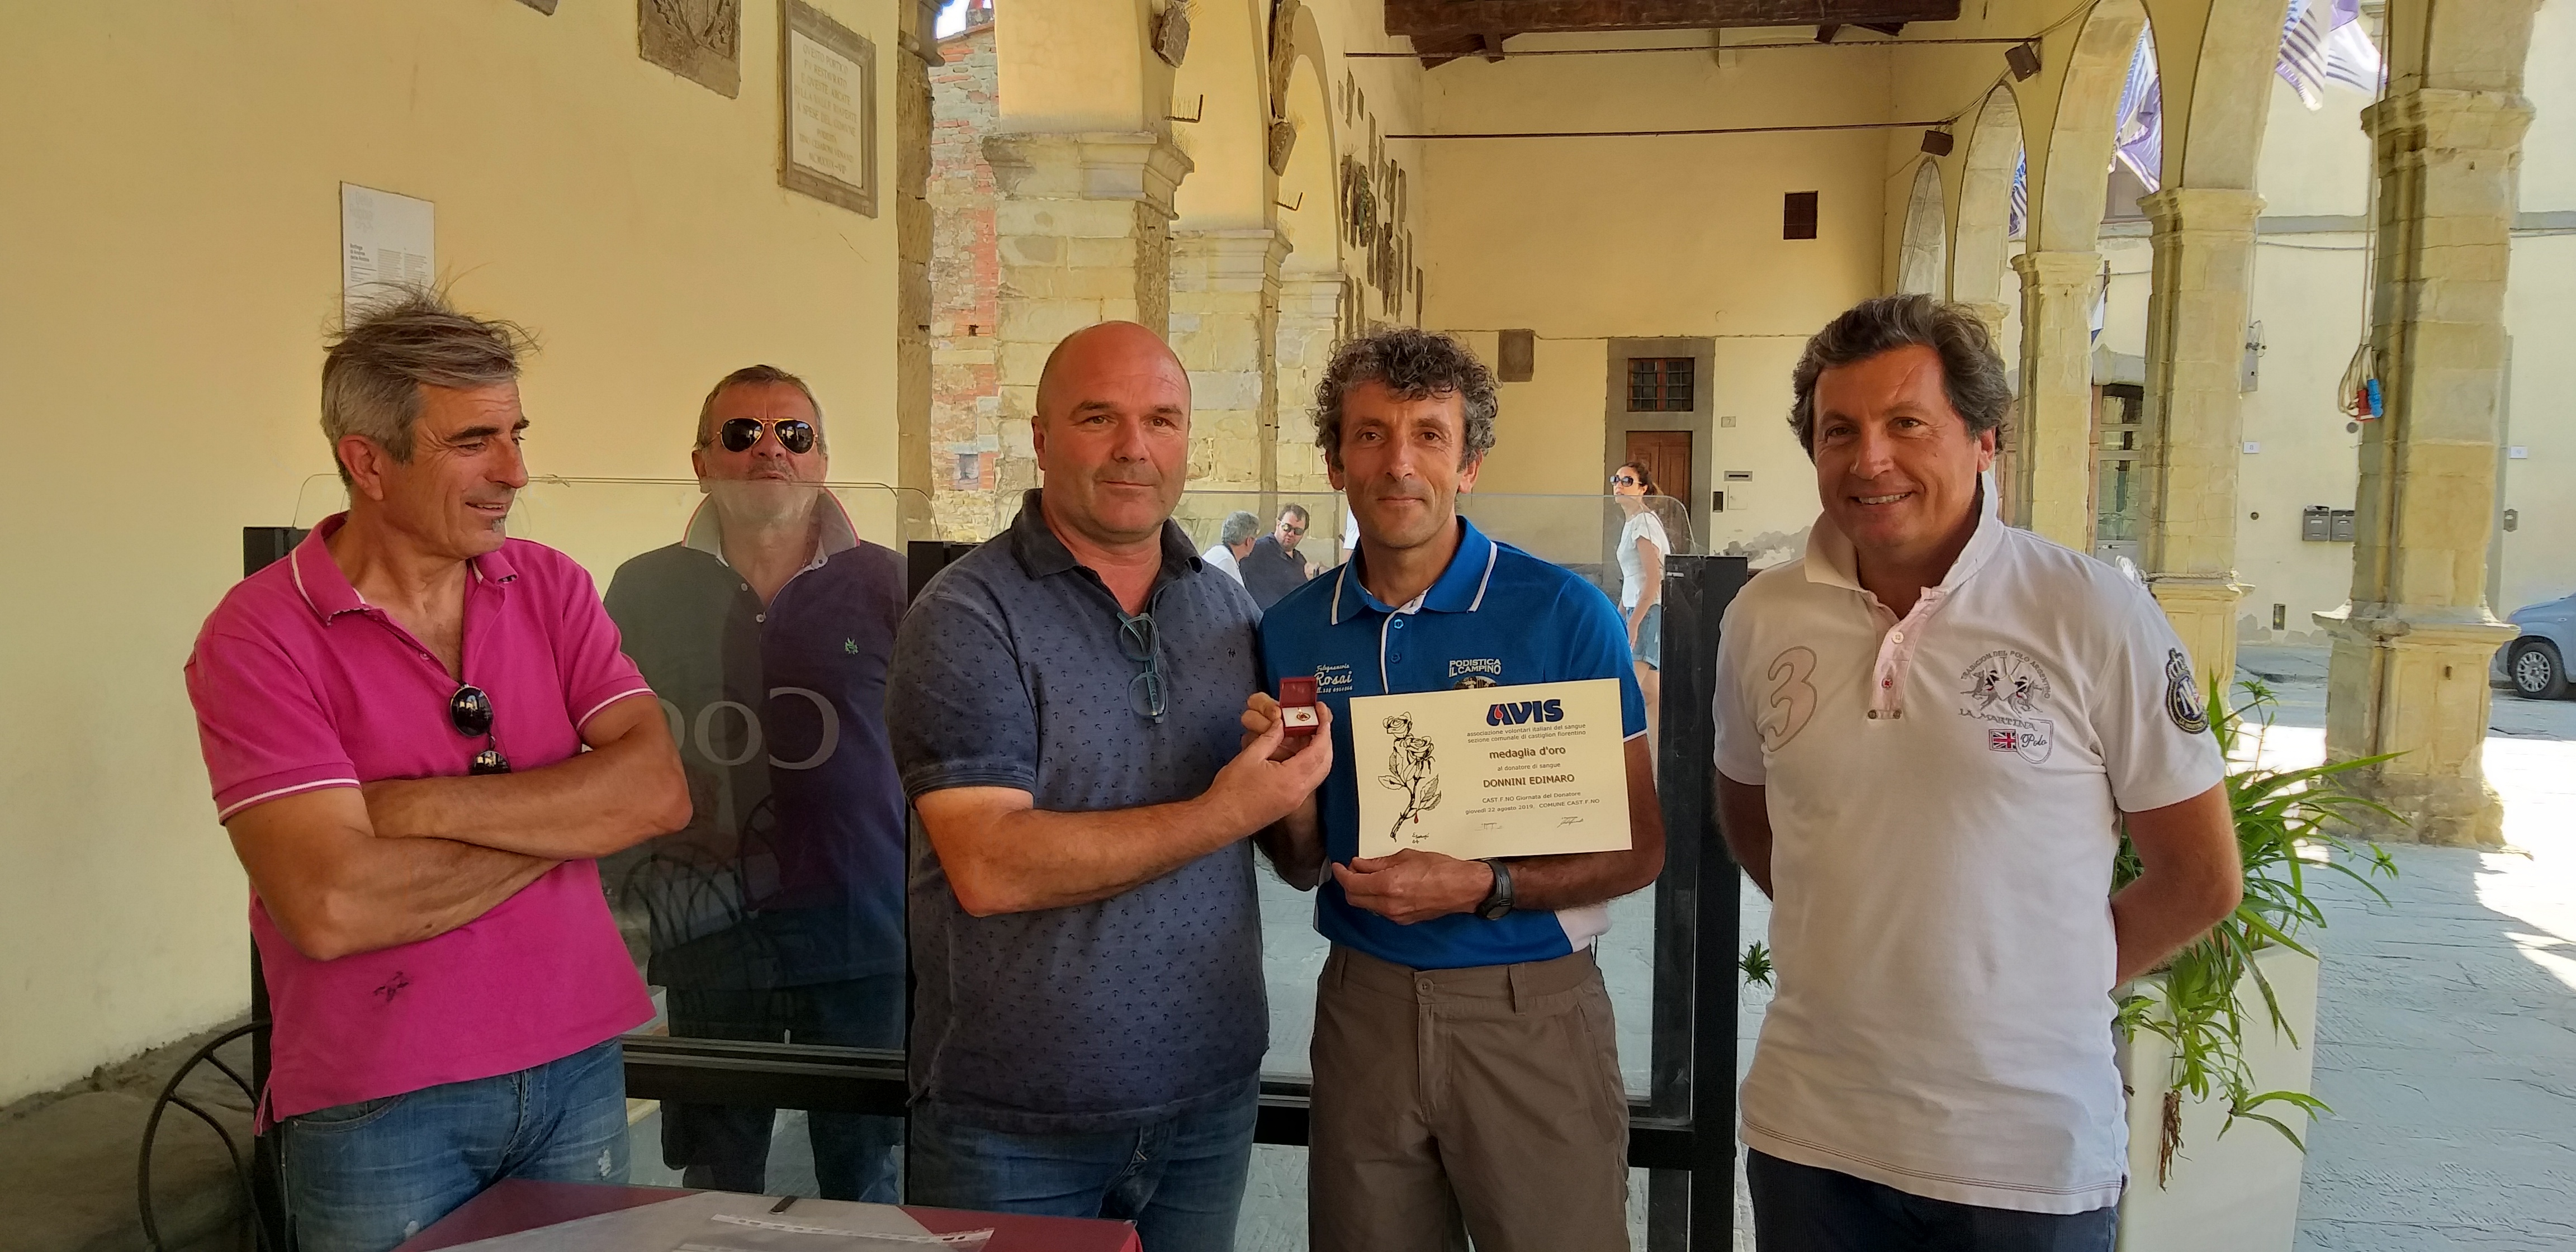 Avis di Castiglion Fiorentino: premiato con una medaglia d’oro e una pergamena Edimaro Donnini, sportivo e donatore